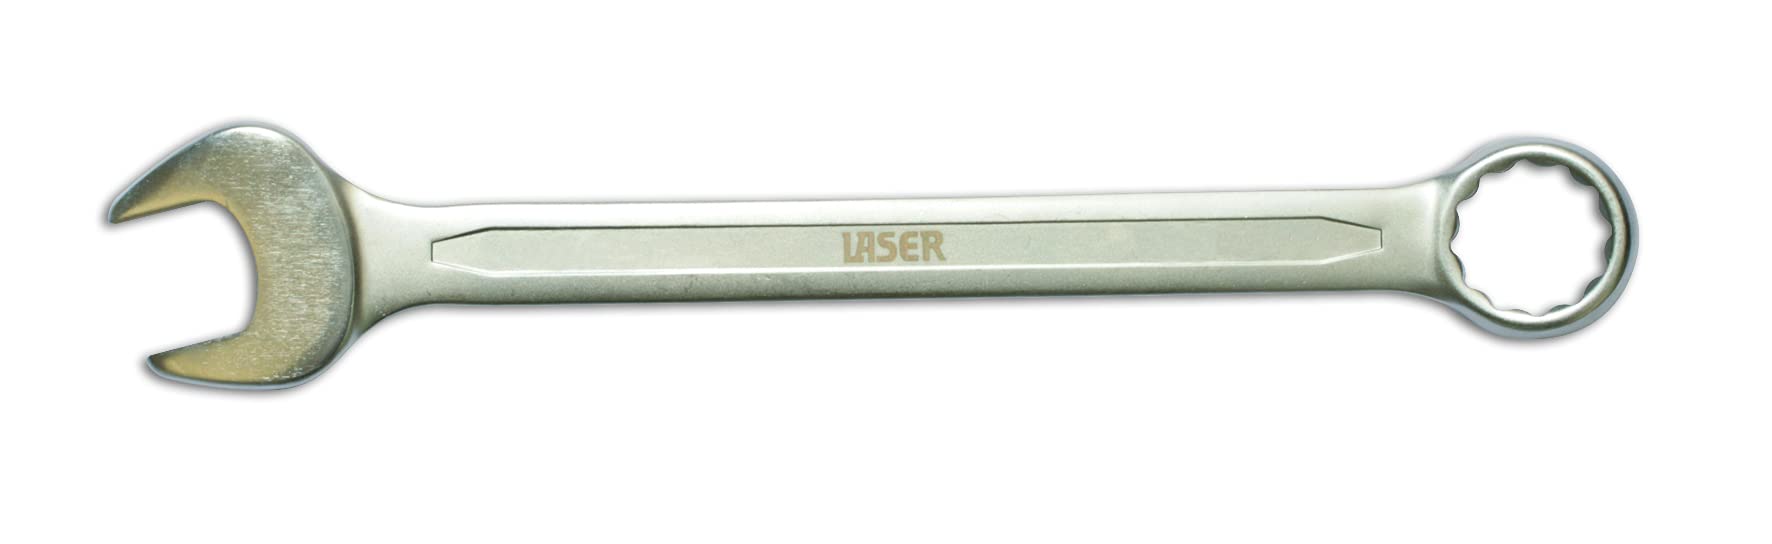 Laser 3076 3076 Kombinationsschlüssel - 28 mm von Laser